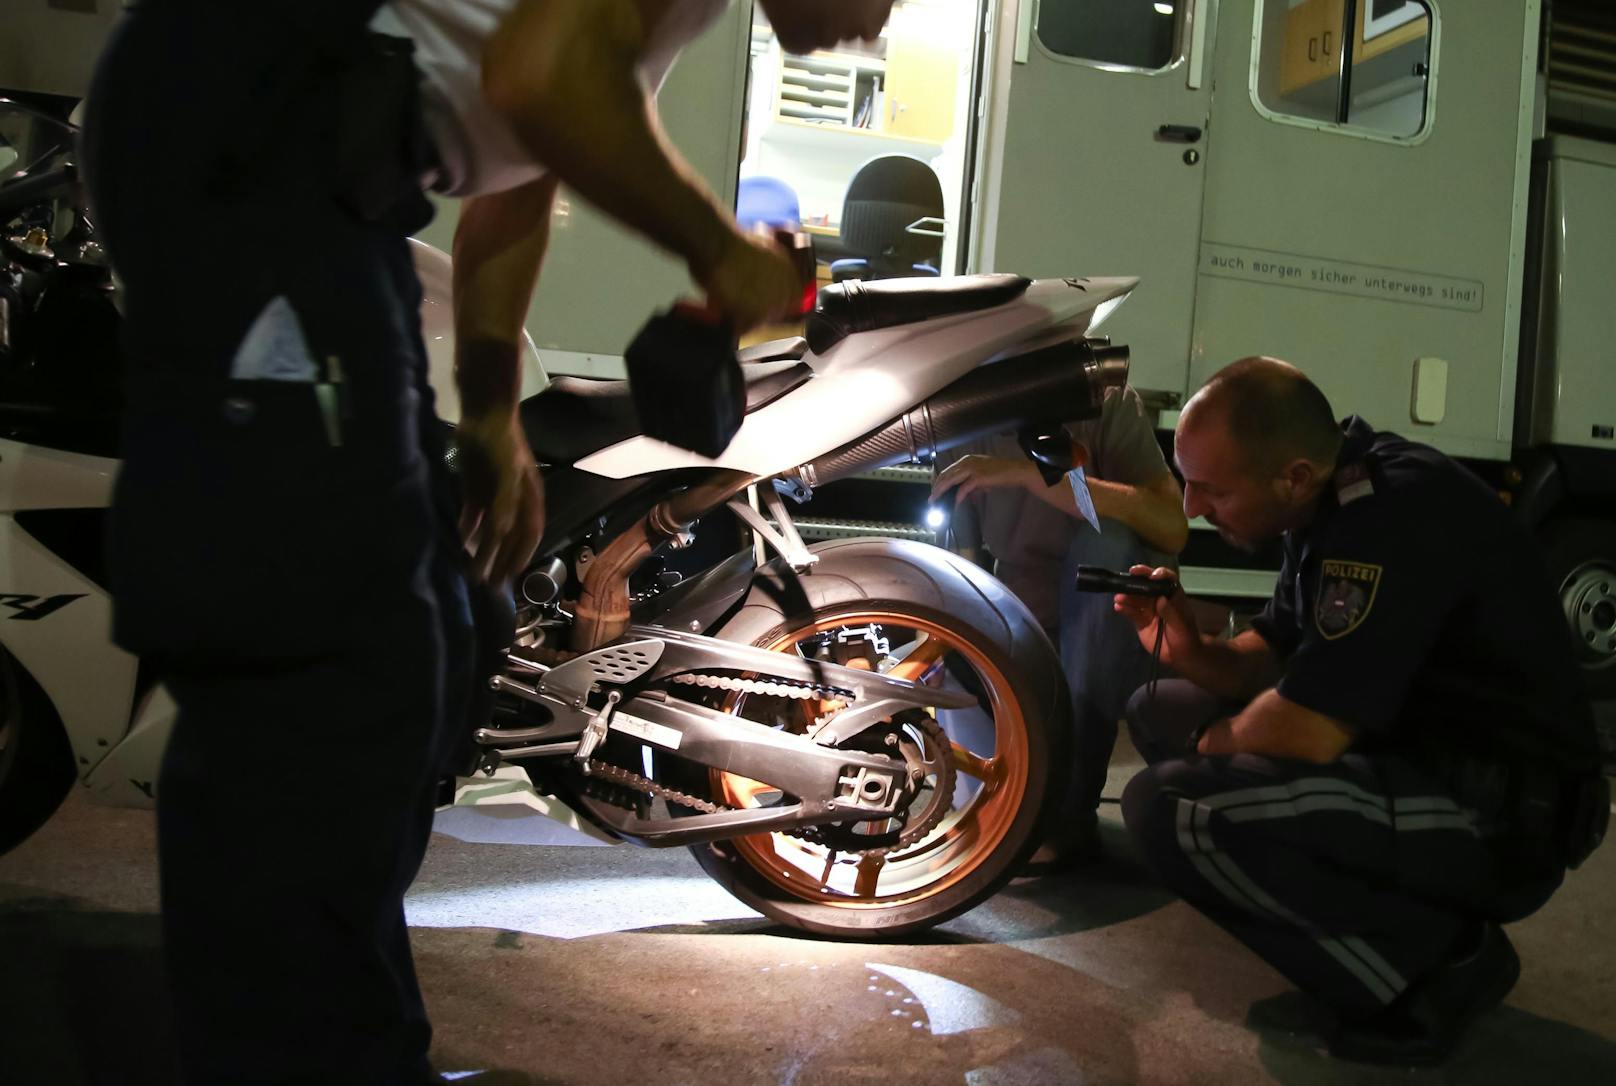 Am Wochenende rückte die Polizei zum "länderübergreifenden Überwachungseinsatz" gegen Motorrad-Sünder aus. (Symbolbild)